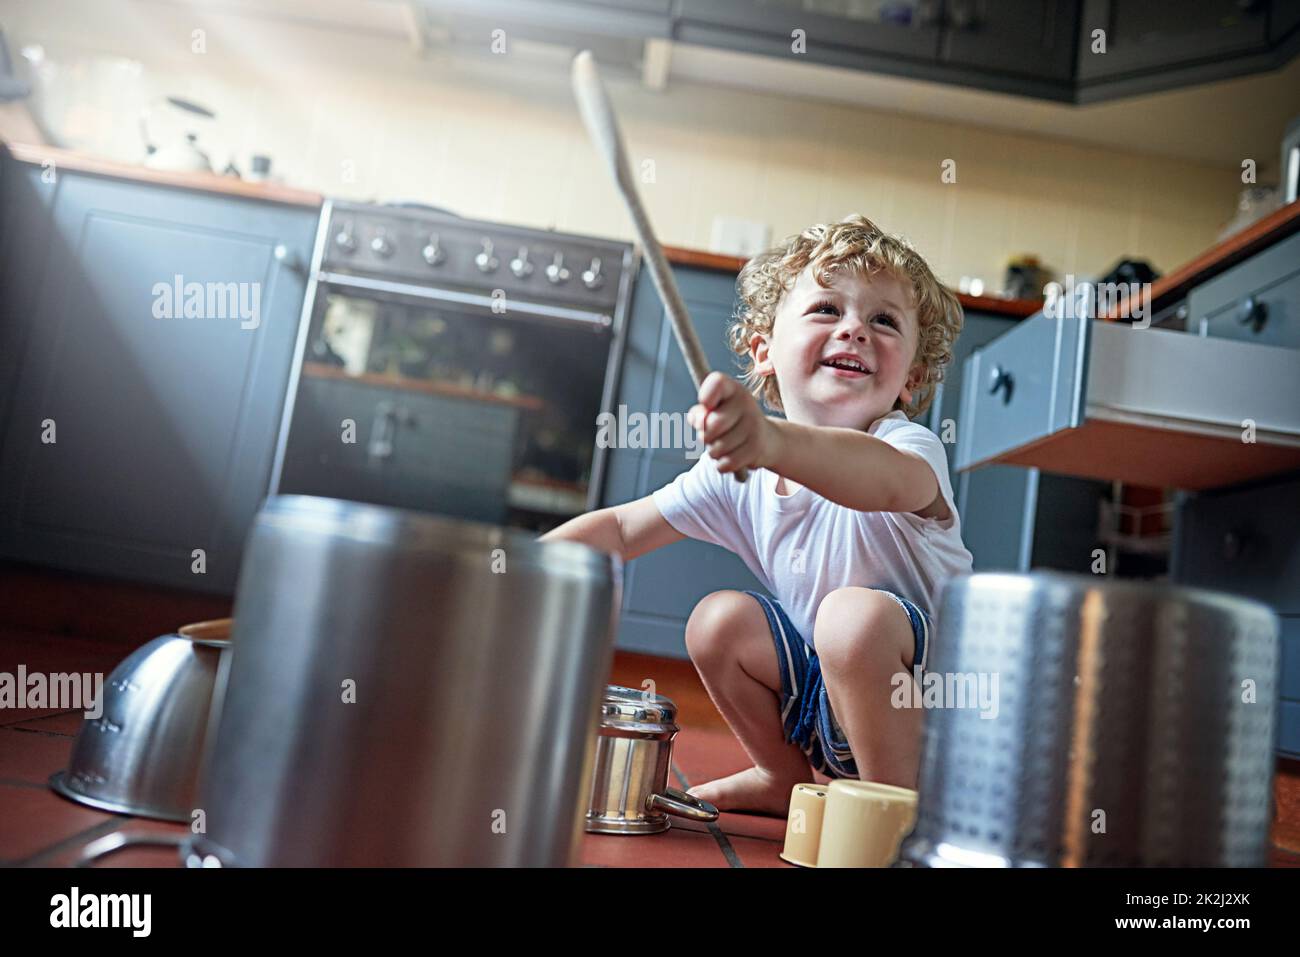 Vous pouvez l'appeler bruit, mais les enfants l'appellent amusant. Photo d'un adorable petit garçon jouant des tambours sur un ensemble de pots dans la cuisine. Banque D'Images